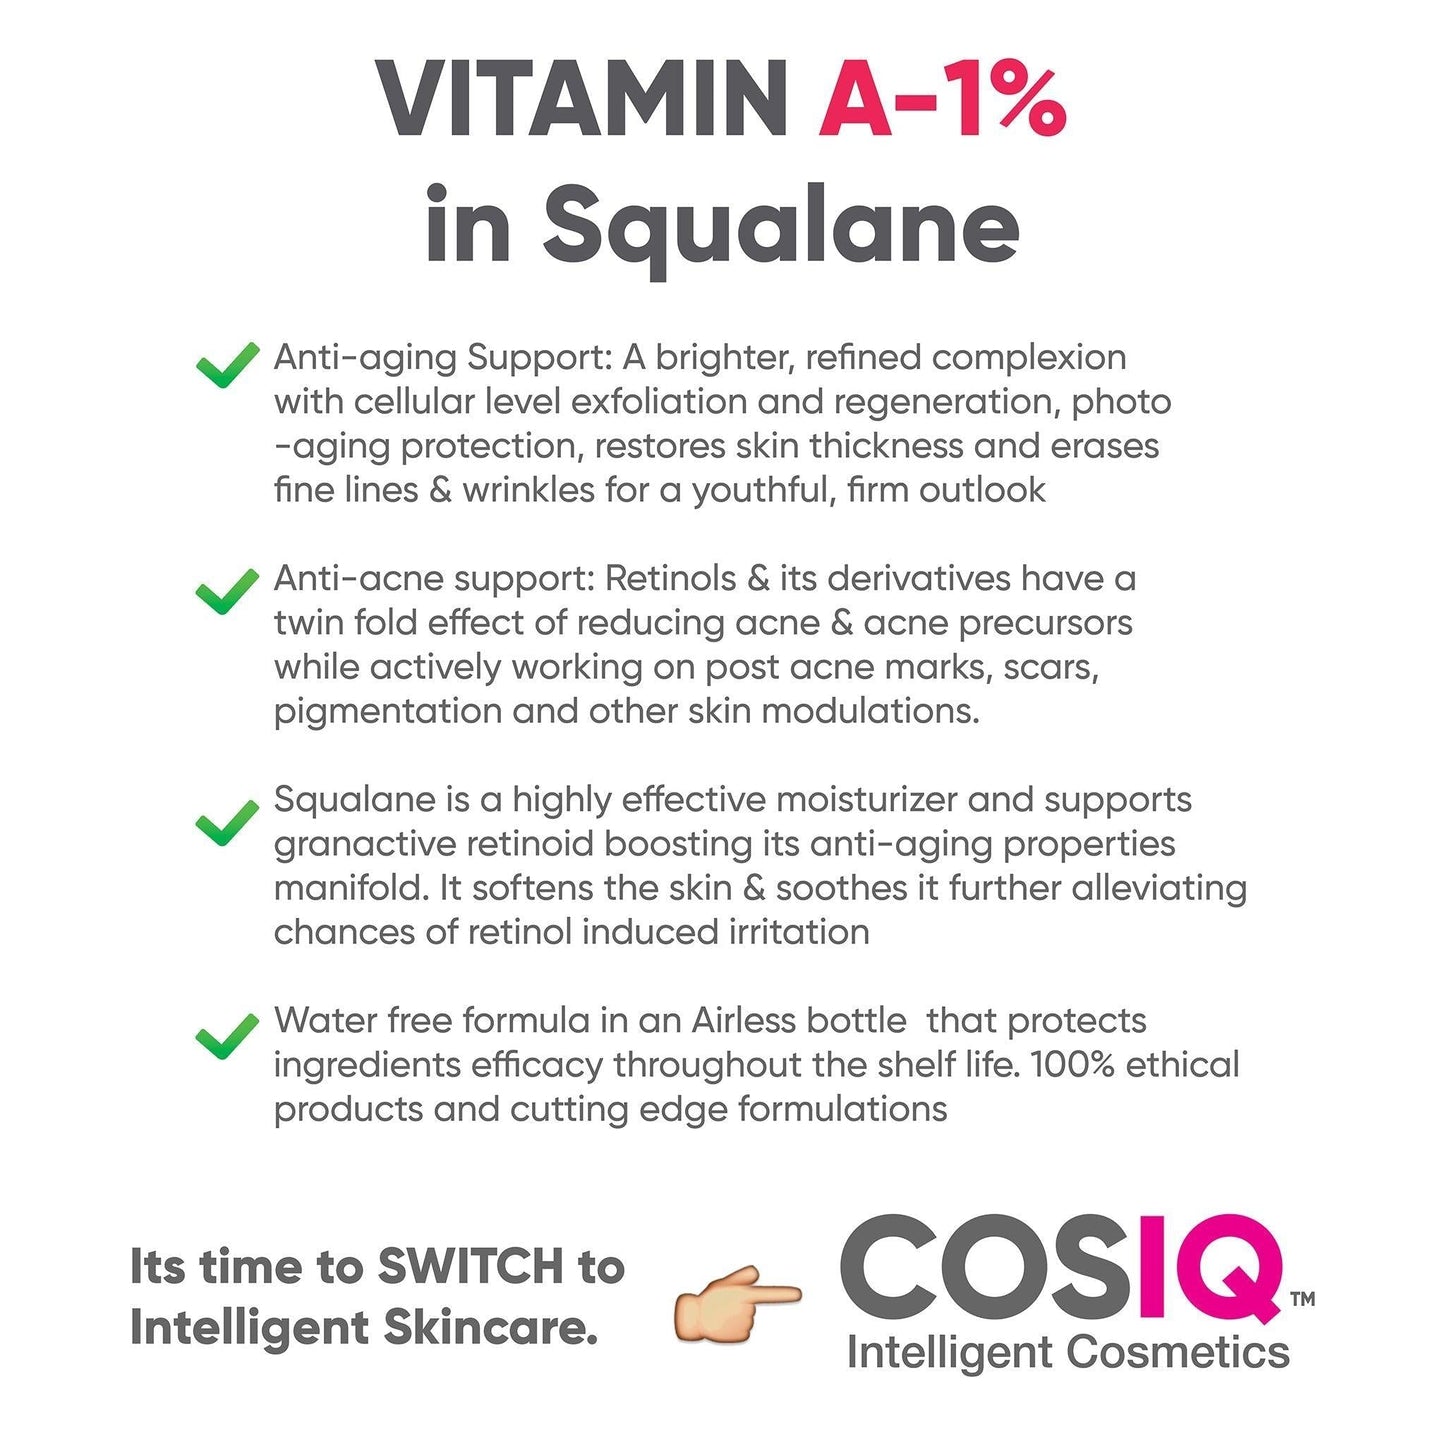 Vitamin A-1% Granactive Retinoid in Squalane, 30ml